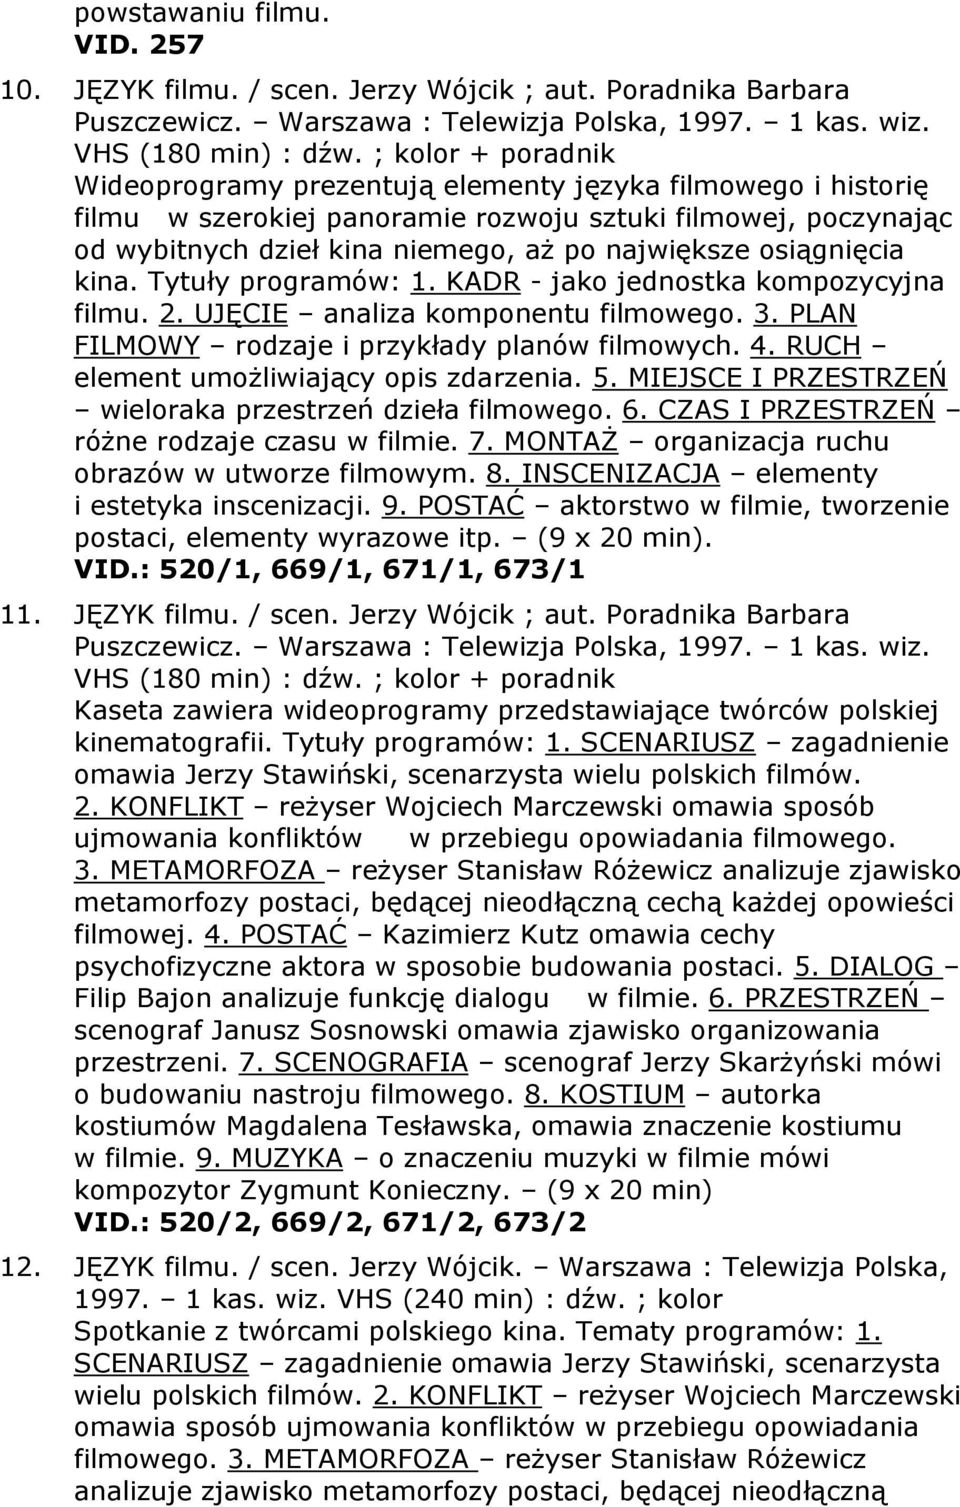 osiągnięcia kina. Tytuły programów: 1. KADR - jako jednostka kompozycyjna filmu. 2. UJĘCIE analiza komponentu filmowego. 3. PLAN FILMOWY rodzaje i przykłady planów filmowych. 4.